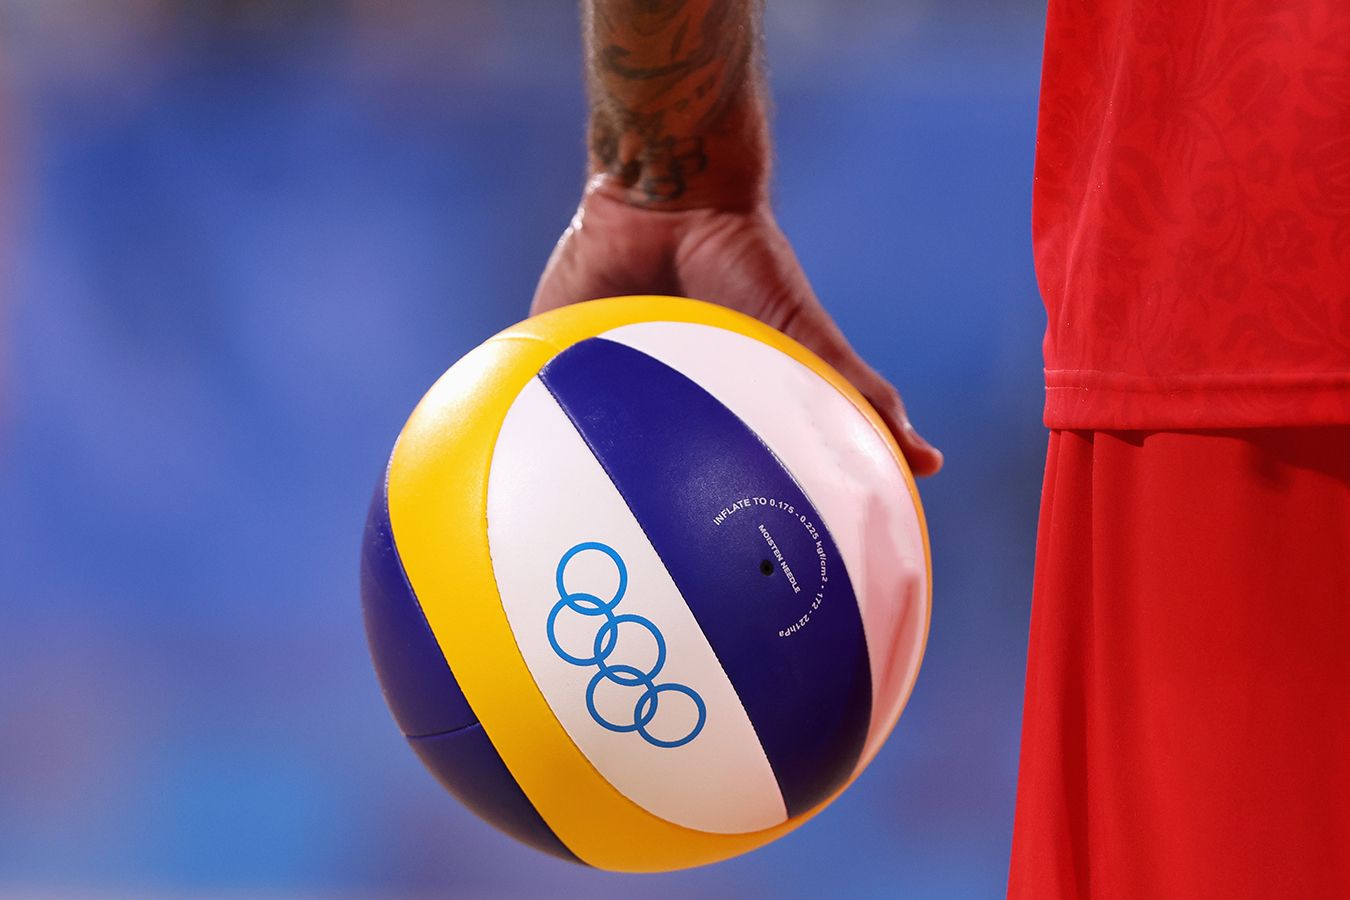 Какая волейбольная сборная возьмёт Олимпиаду у мужчин? Интрига максимальная!